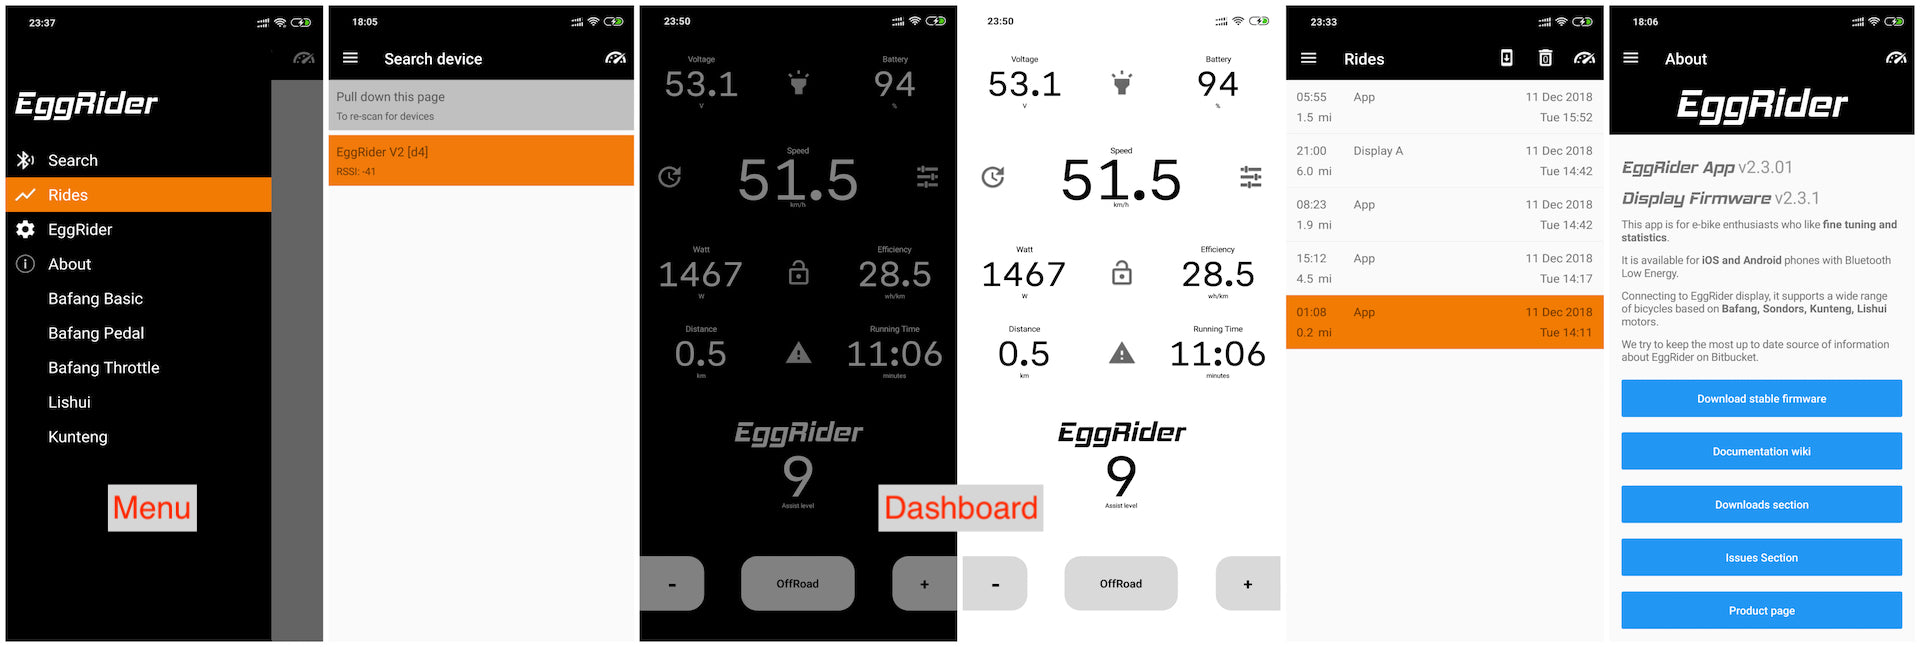 EggRider main pages screenshots